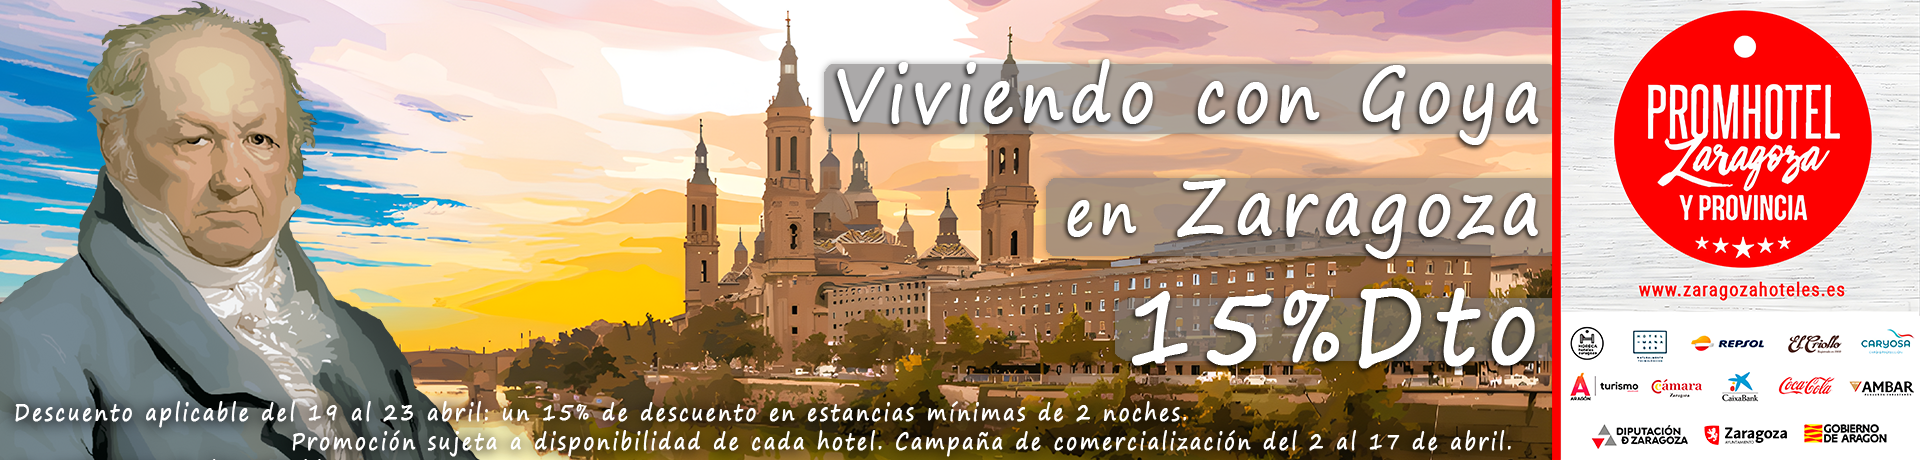 campaña Viviendo con Goya en Zaragoza